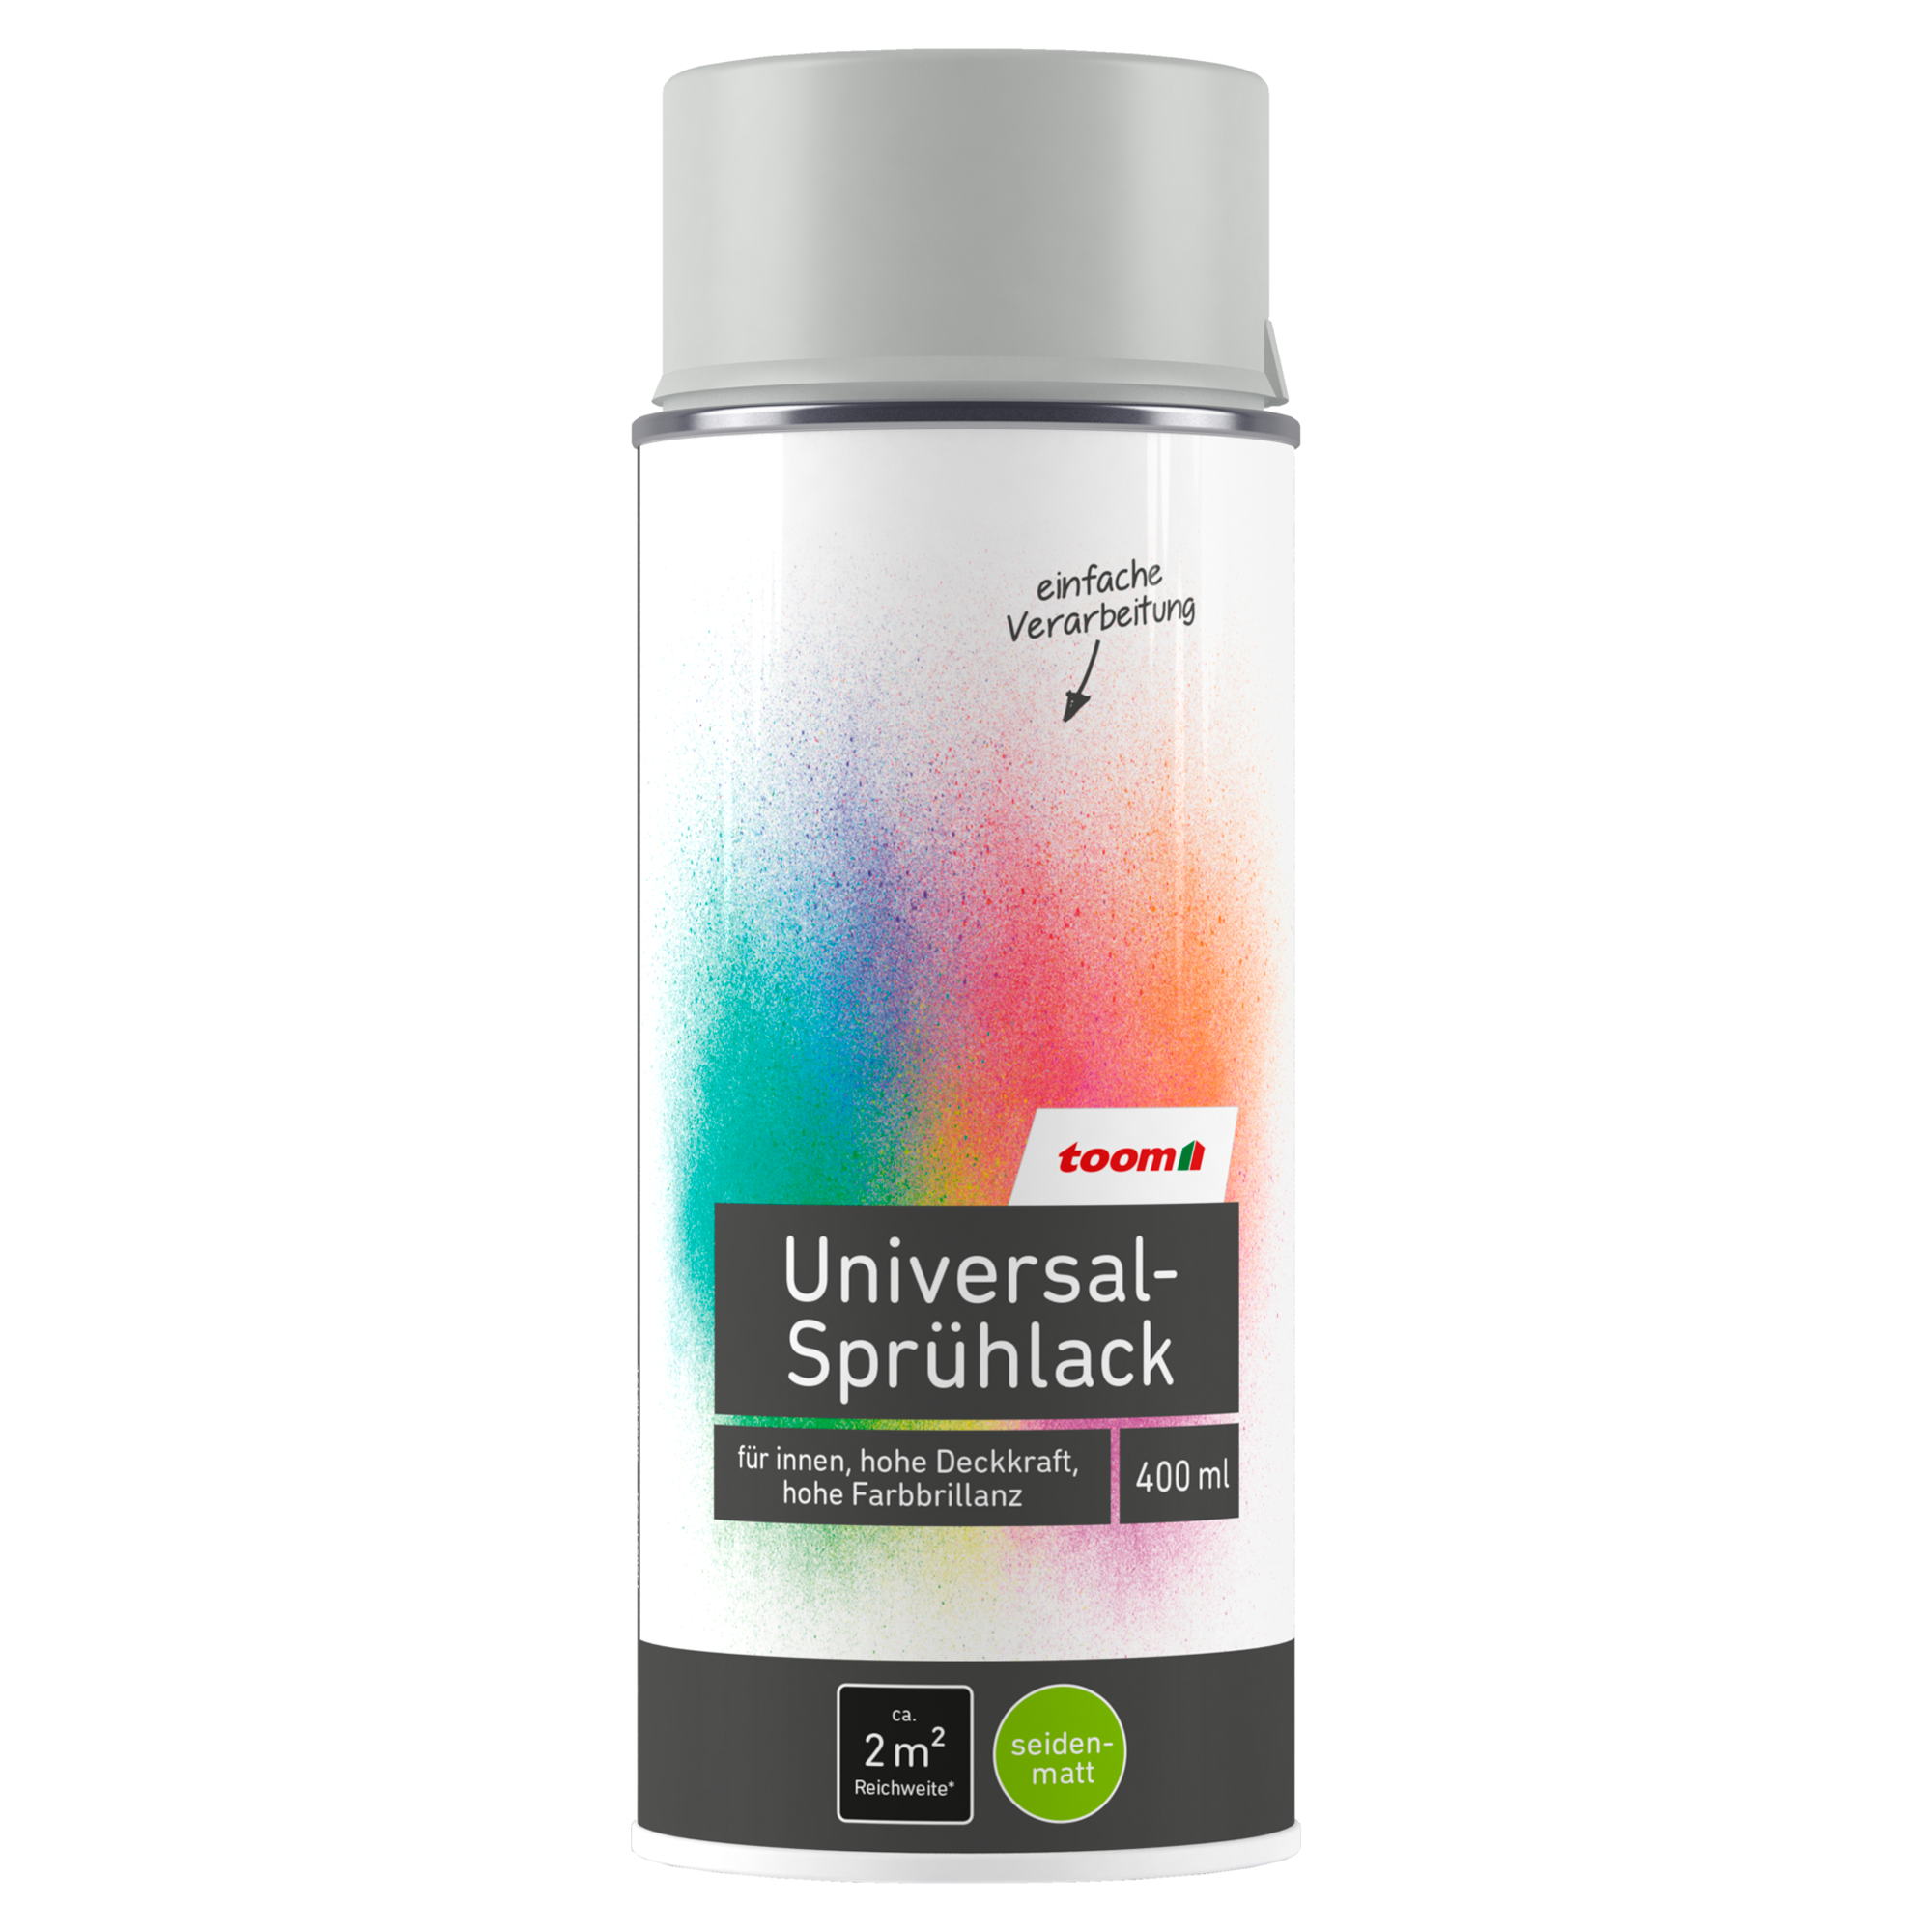 Universal-Sprühlack 'Mondschein' lichtgrau seidenmatt 400 ml + product picture